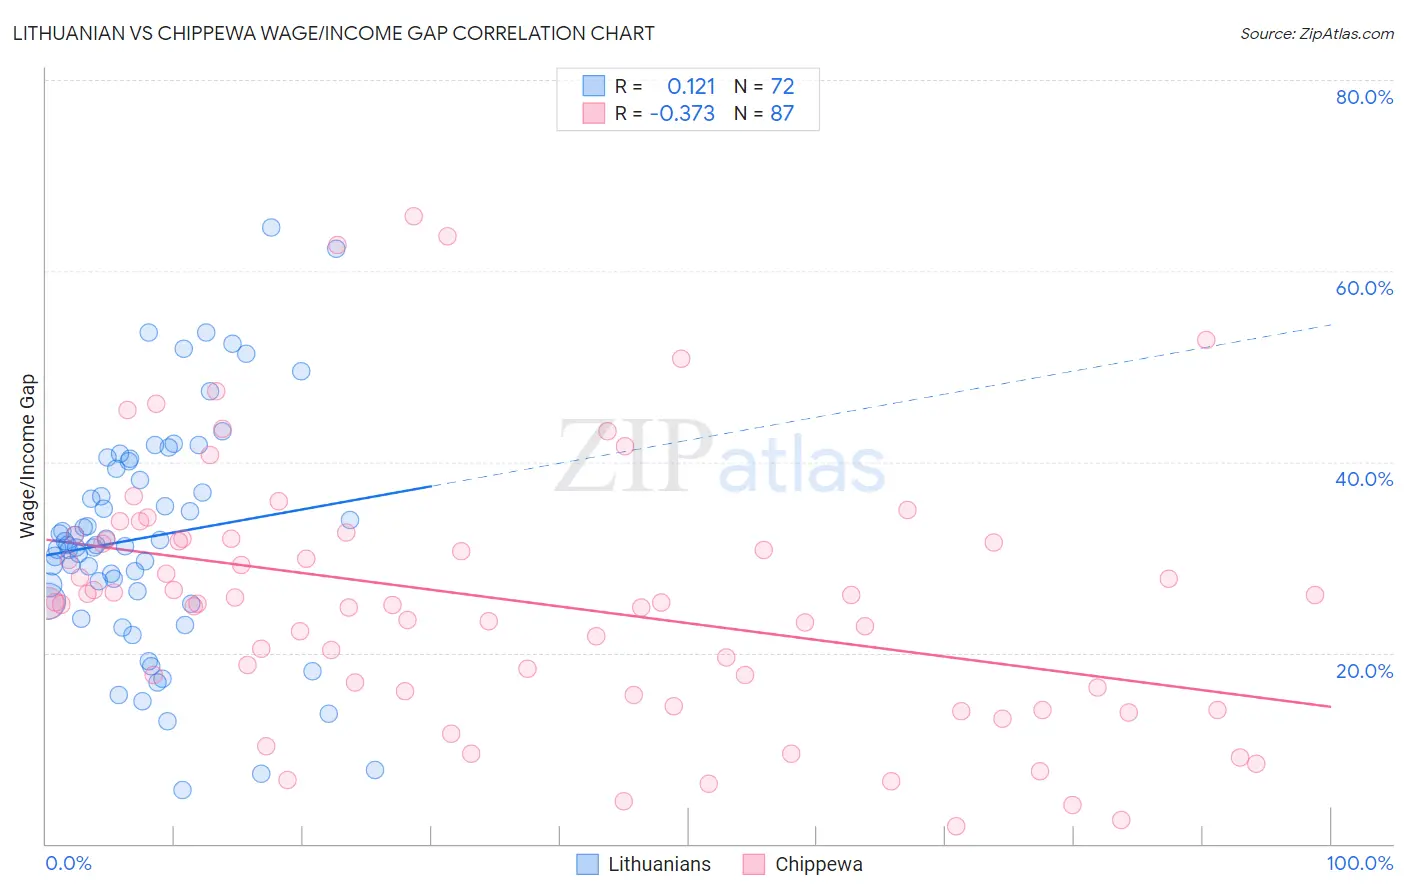 Lithuanian vs Chippewa Wage/Income Gap